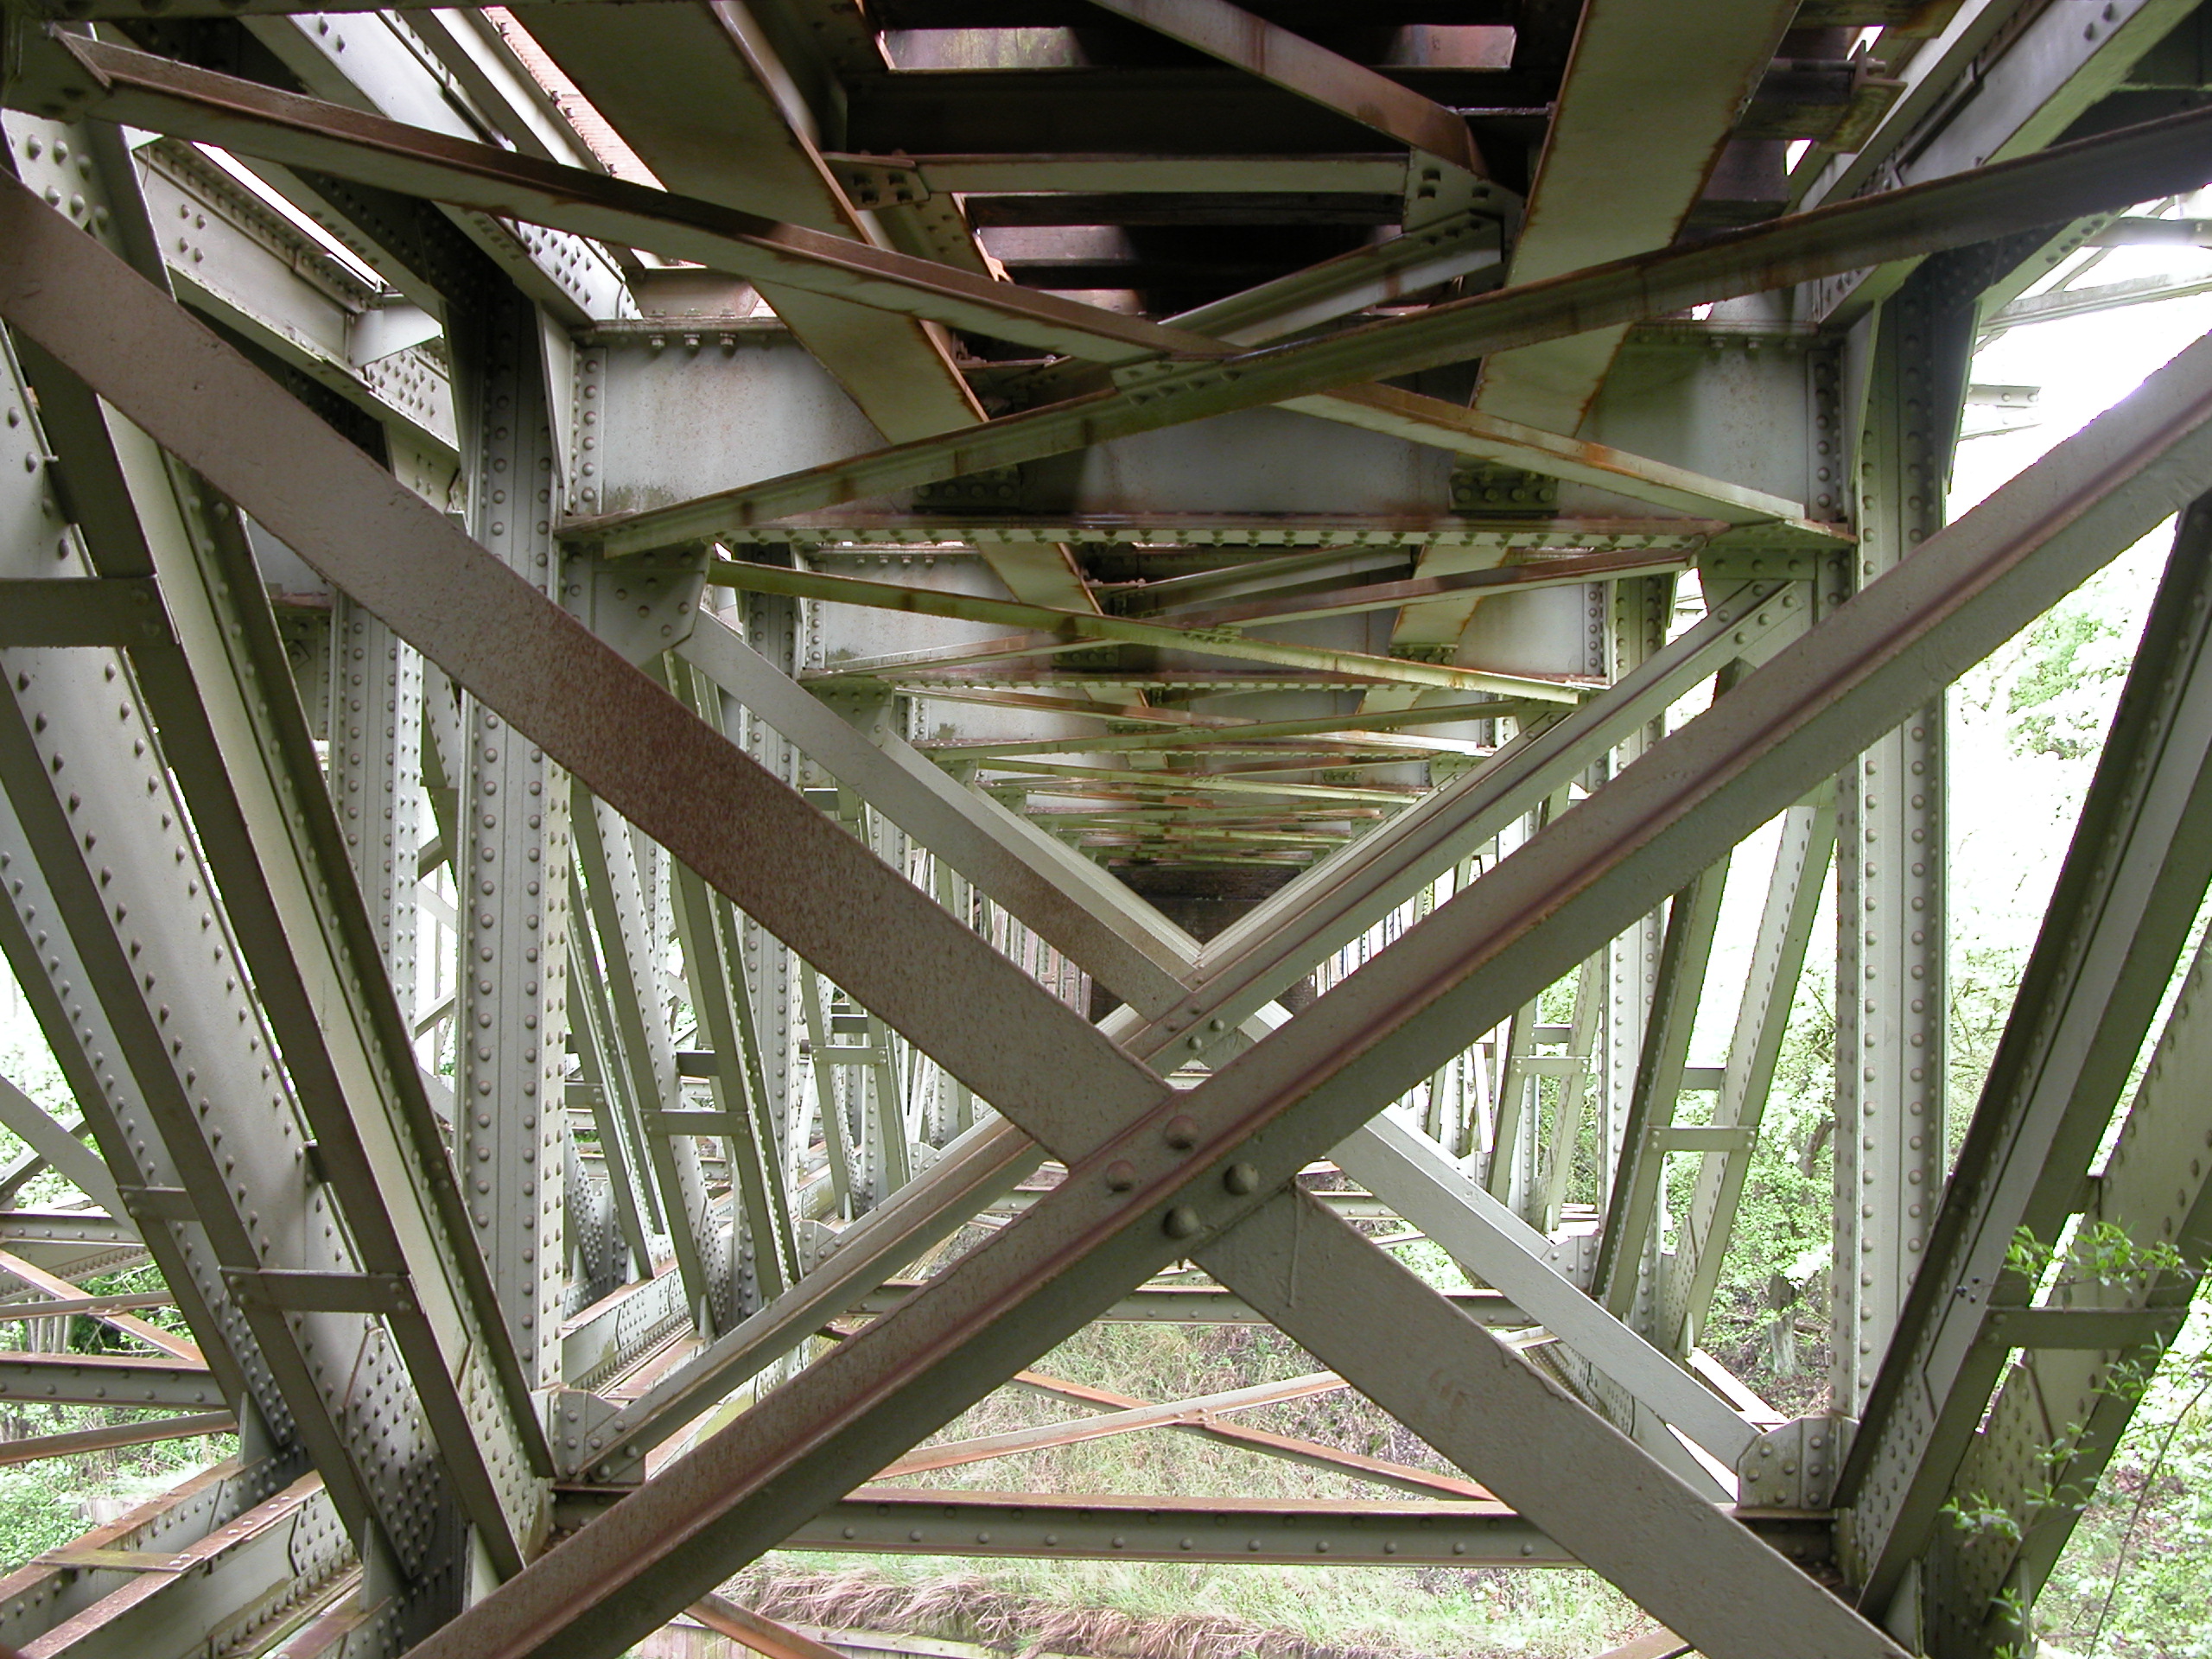 underside of a bridge metal girders beams